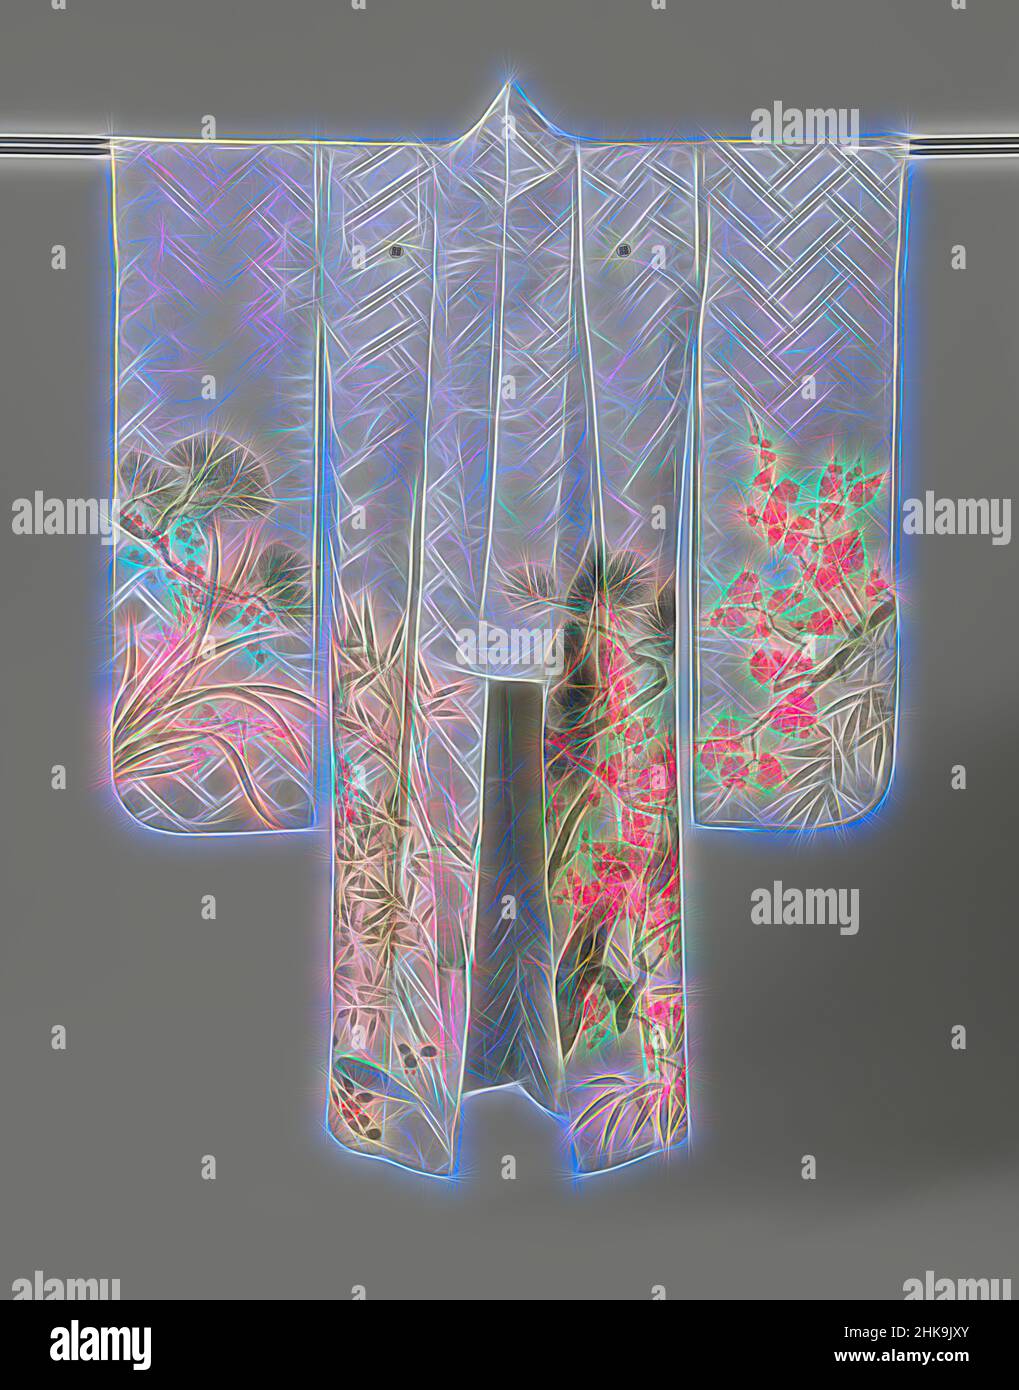 Inspirado por Kimono para una mujer soltera (furisode) para Año Nuevo, Furisode con plantas de Año Nuevo, kimono formal de manga larga para una mujer joven soltera (furisode), en el borde inferior de las mangas, frente y espalda decorado con los tres amigos del invierno: pino, (dos especies) bambú y ciruela (roja), Reimaginado por Artotop. Arte clásico reinventado con un toque moderno. Diseño de brillo cálido y alegre y luminosidad e radiación de rayos de luz. Fotografía inspirada en el surrealismo y el futurismo, que abarca la energía dinámica de la tecnología moderna, el movimiento, la velocidad y la revolución de la cultura Foto de stock